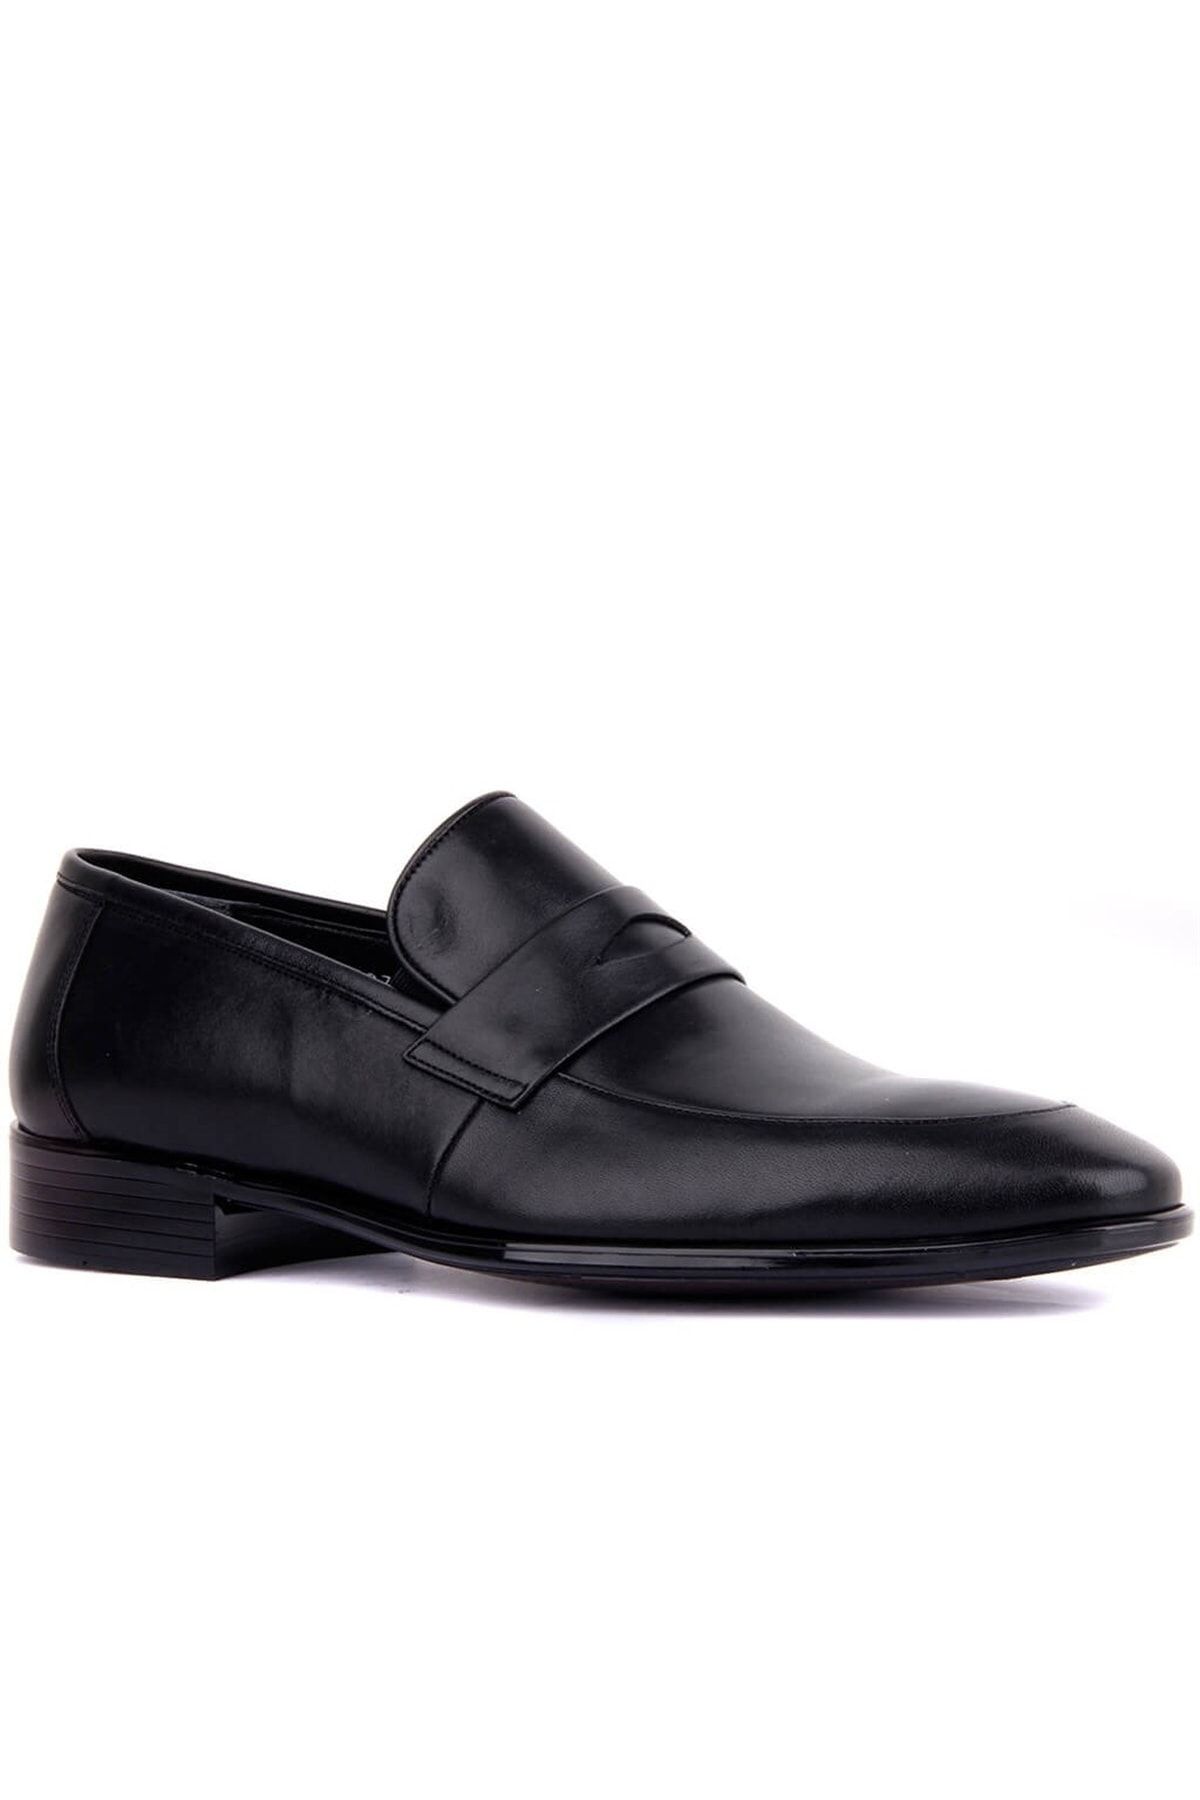 Fosco 9074 Siyah Hakiki Deri Erkek Klasik Ayakkabı